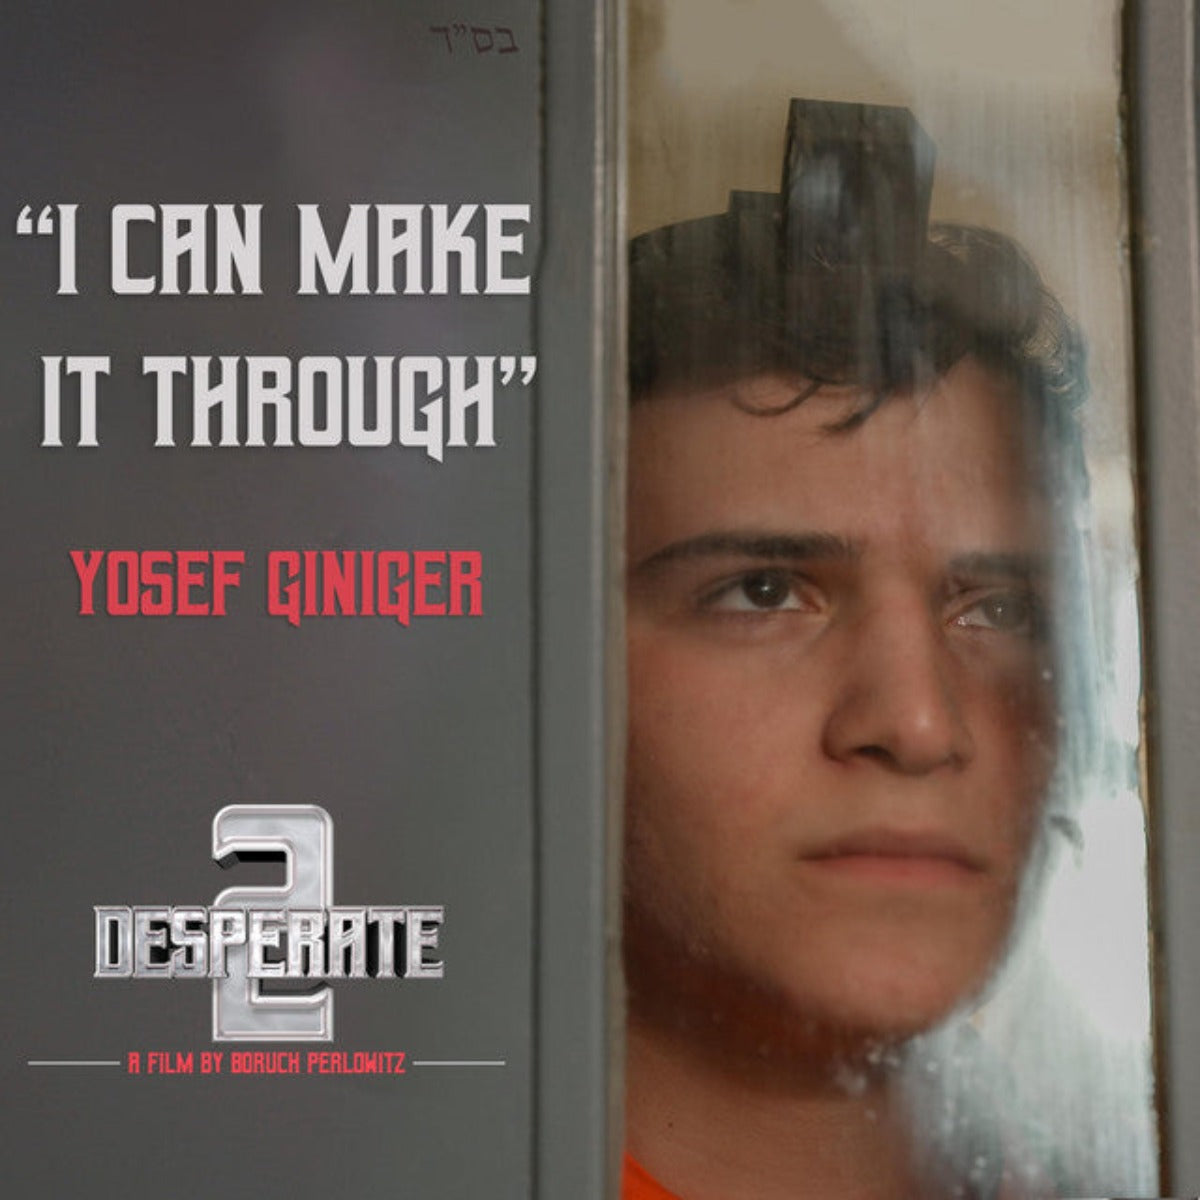 Yosef Giniger [2 Desperate] - I Can Make It Through (Single)